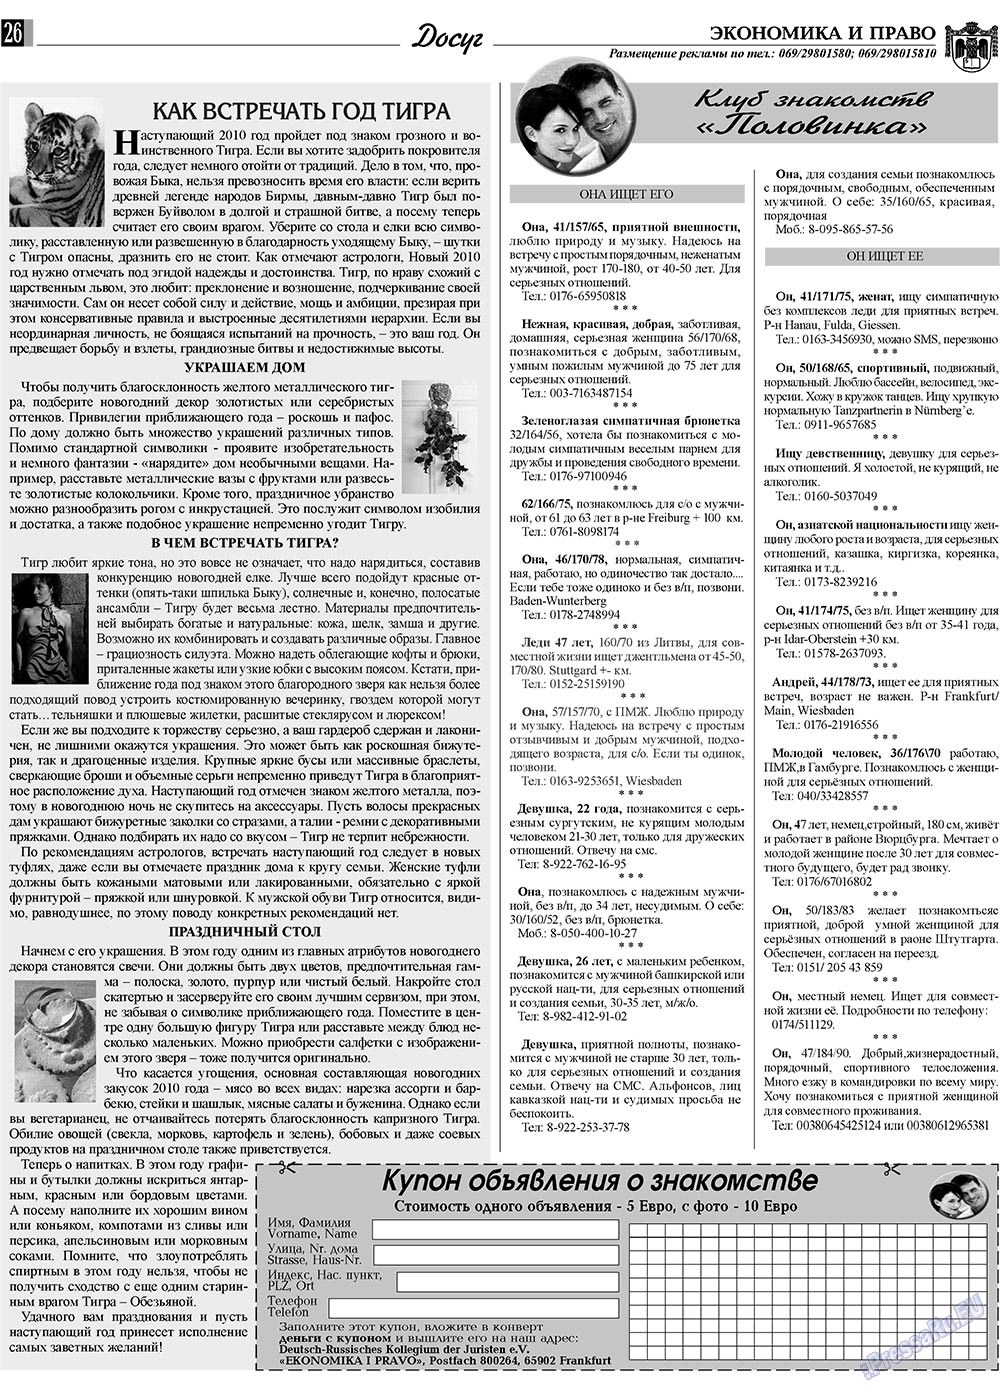 Экономика и право, газета. 2009 №12 стр.26